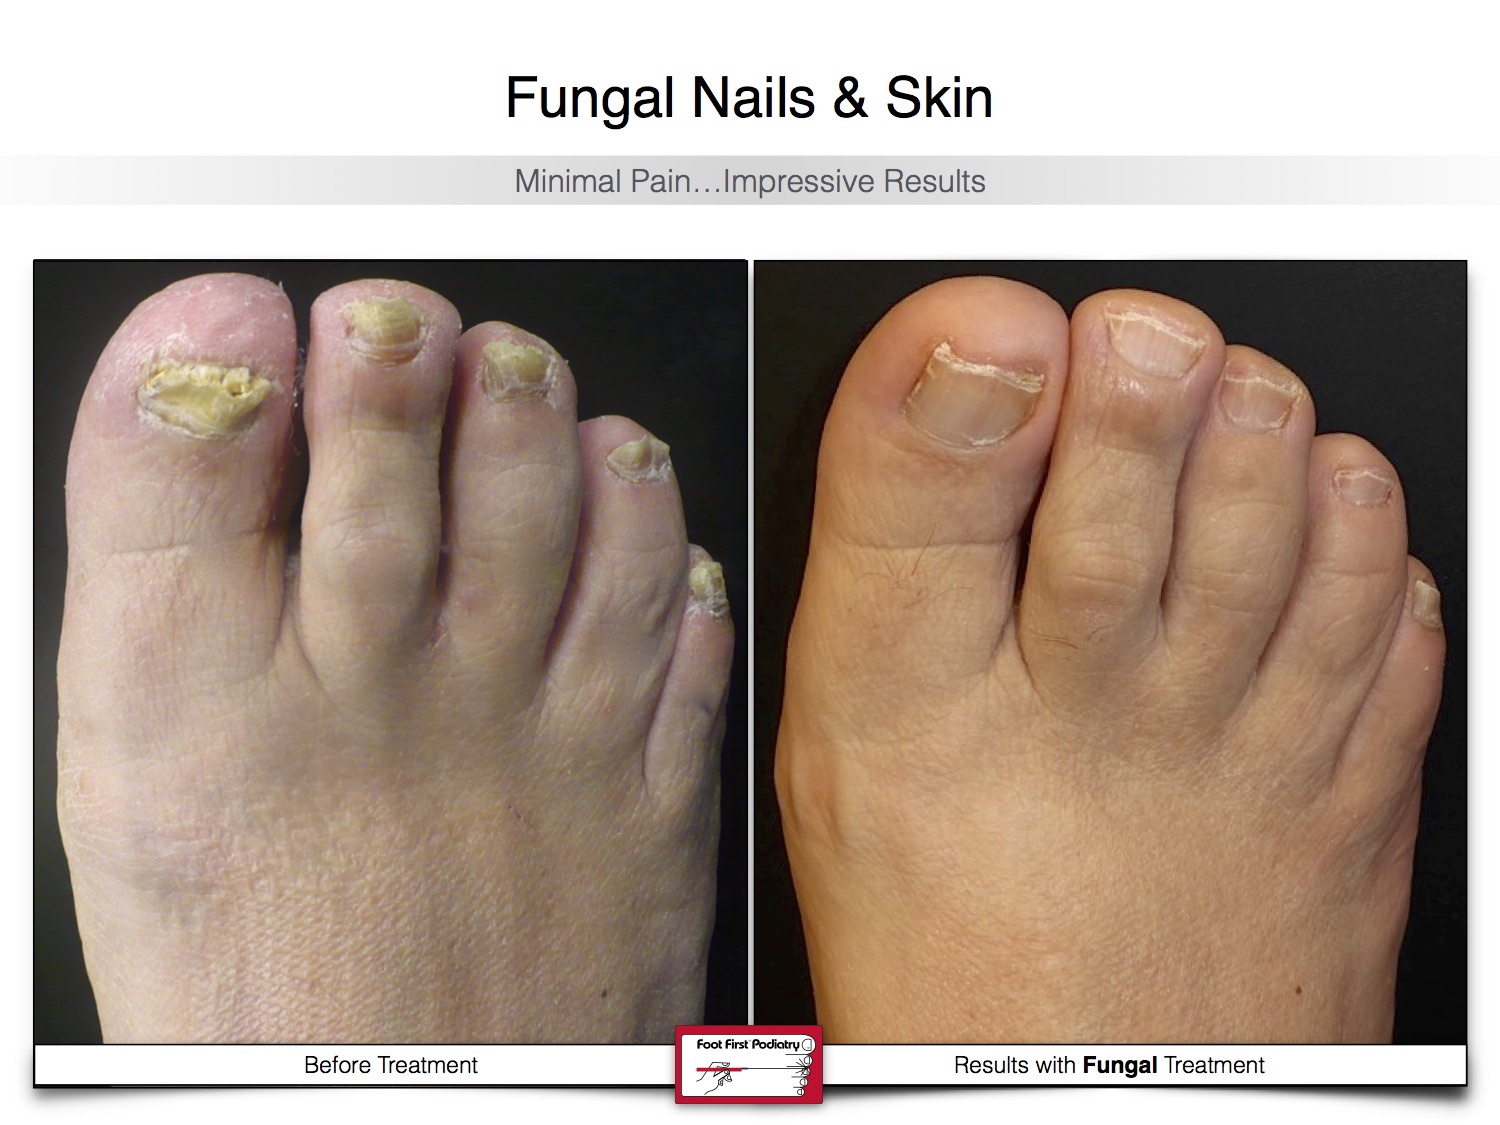 Fungal Nails & Skin 02.16 23.jpg